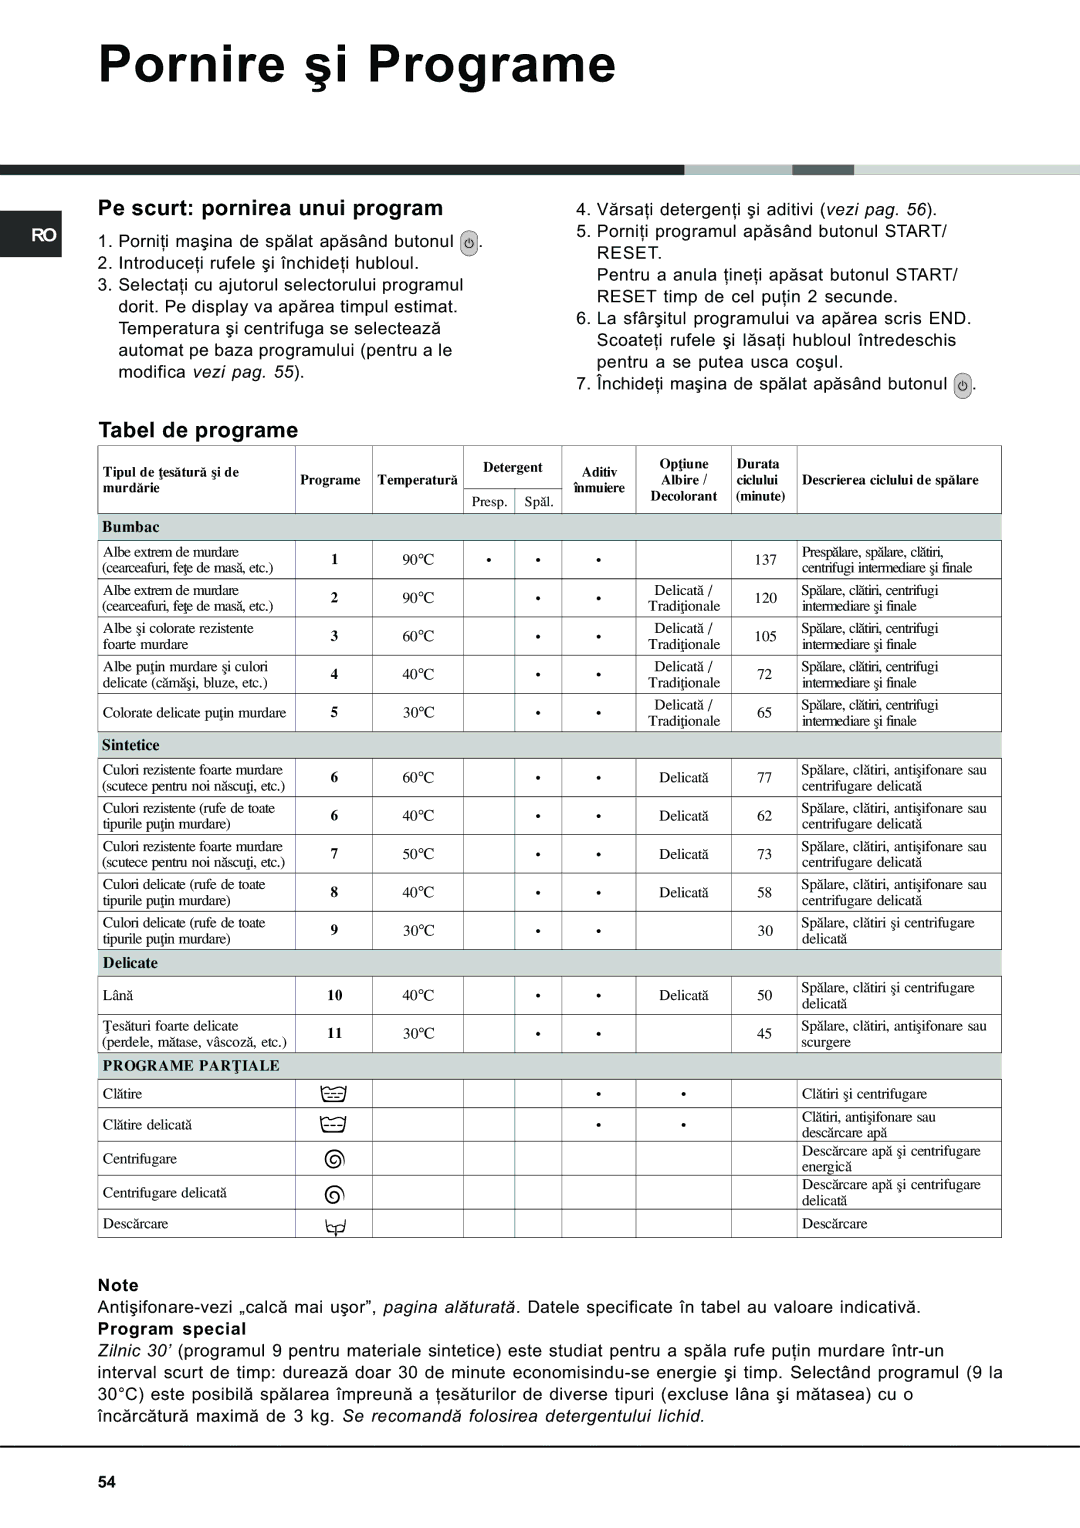 Ariston AVSD 109 manual Pornire ºi Programe, Pe scurt pornirea unui program, Tabel de programe 